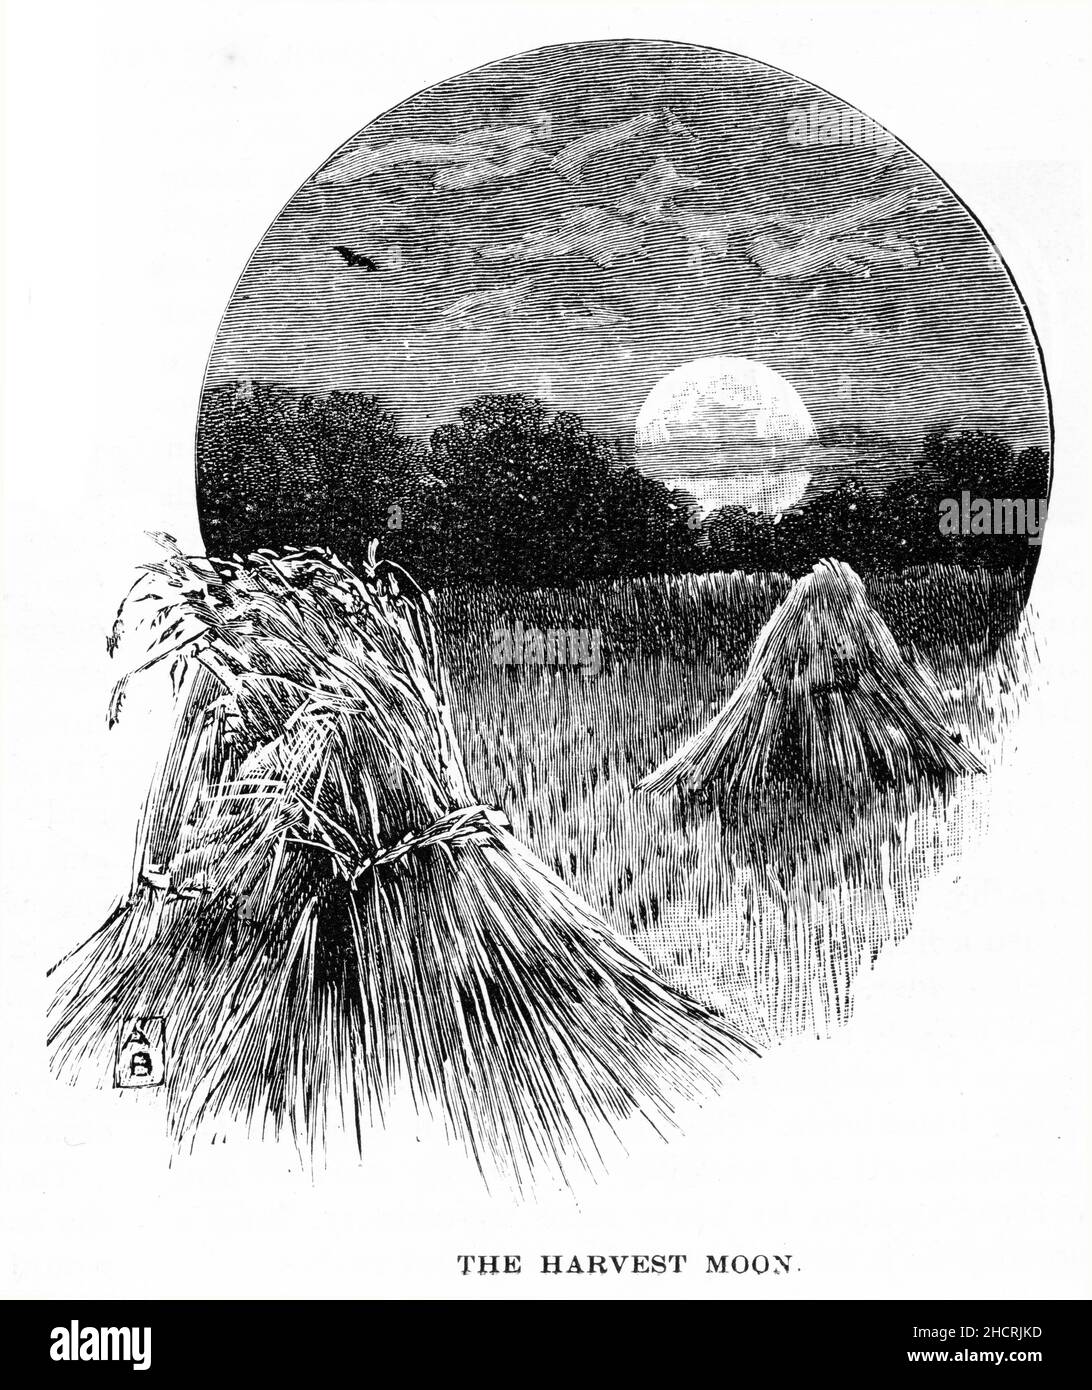 Grabado de una luna de avrest que se levanta sobre las poleas de trigo, publicado en 1892 Foto de stock